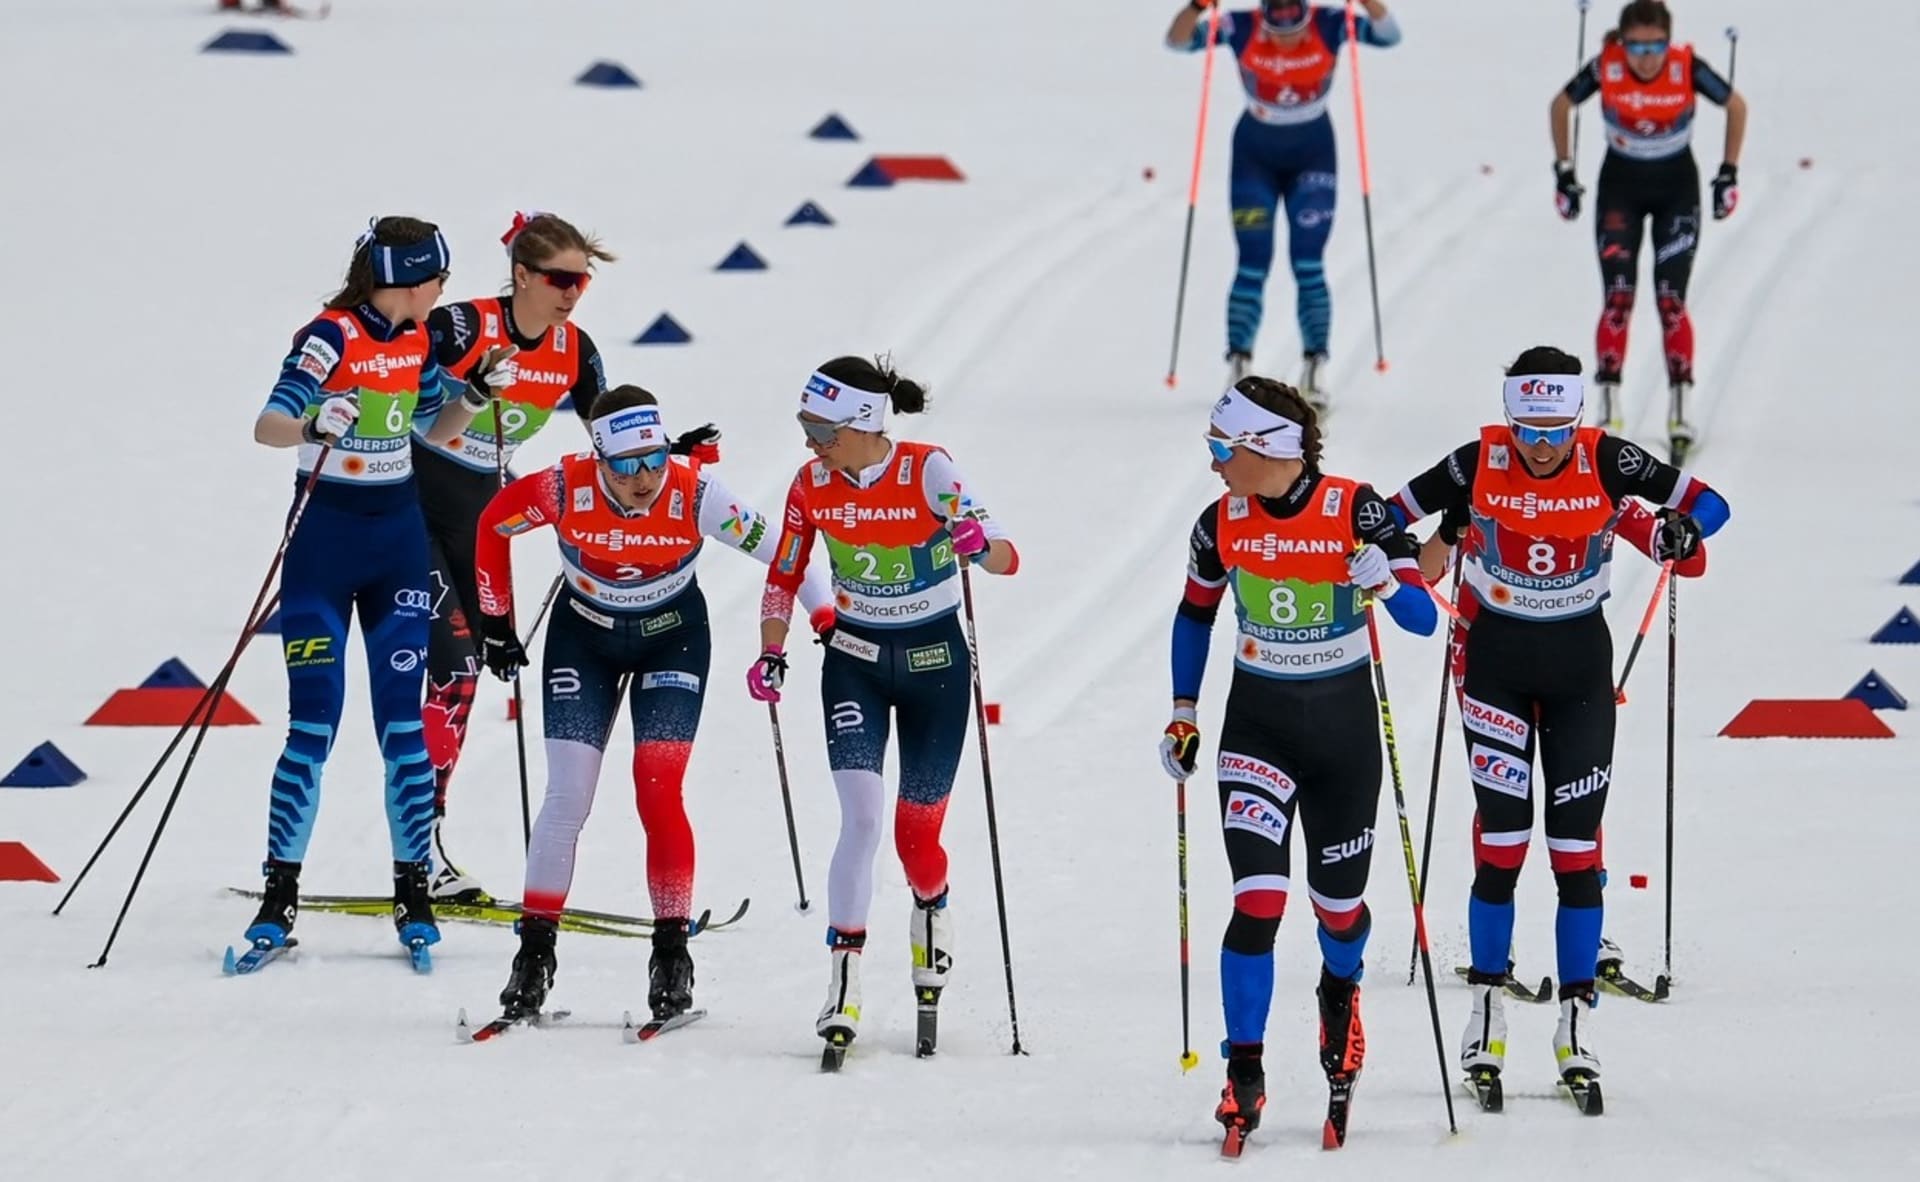 České ženské štafetě (vpravo) se povedl závod na mistrovství světa v německém Oberstdorfu. Sestava Kateřina Razýmová, Petra Nováková, Kateřina Janatová a Petra Hynčicová doběhla osmá.